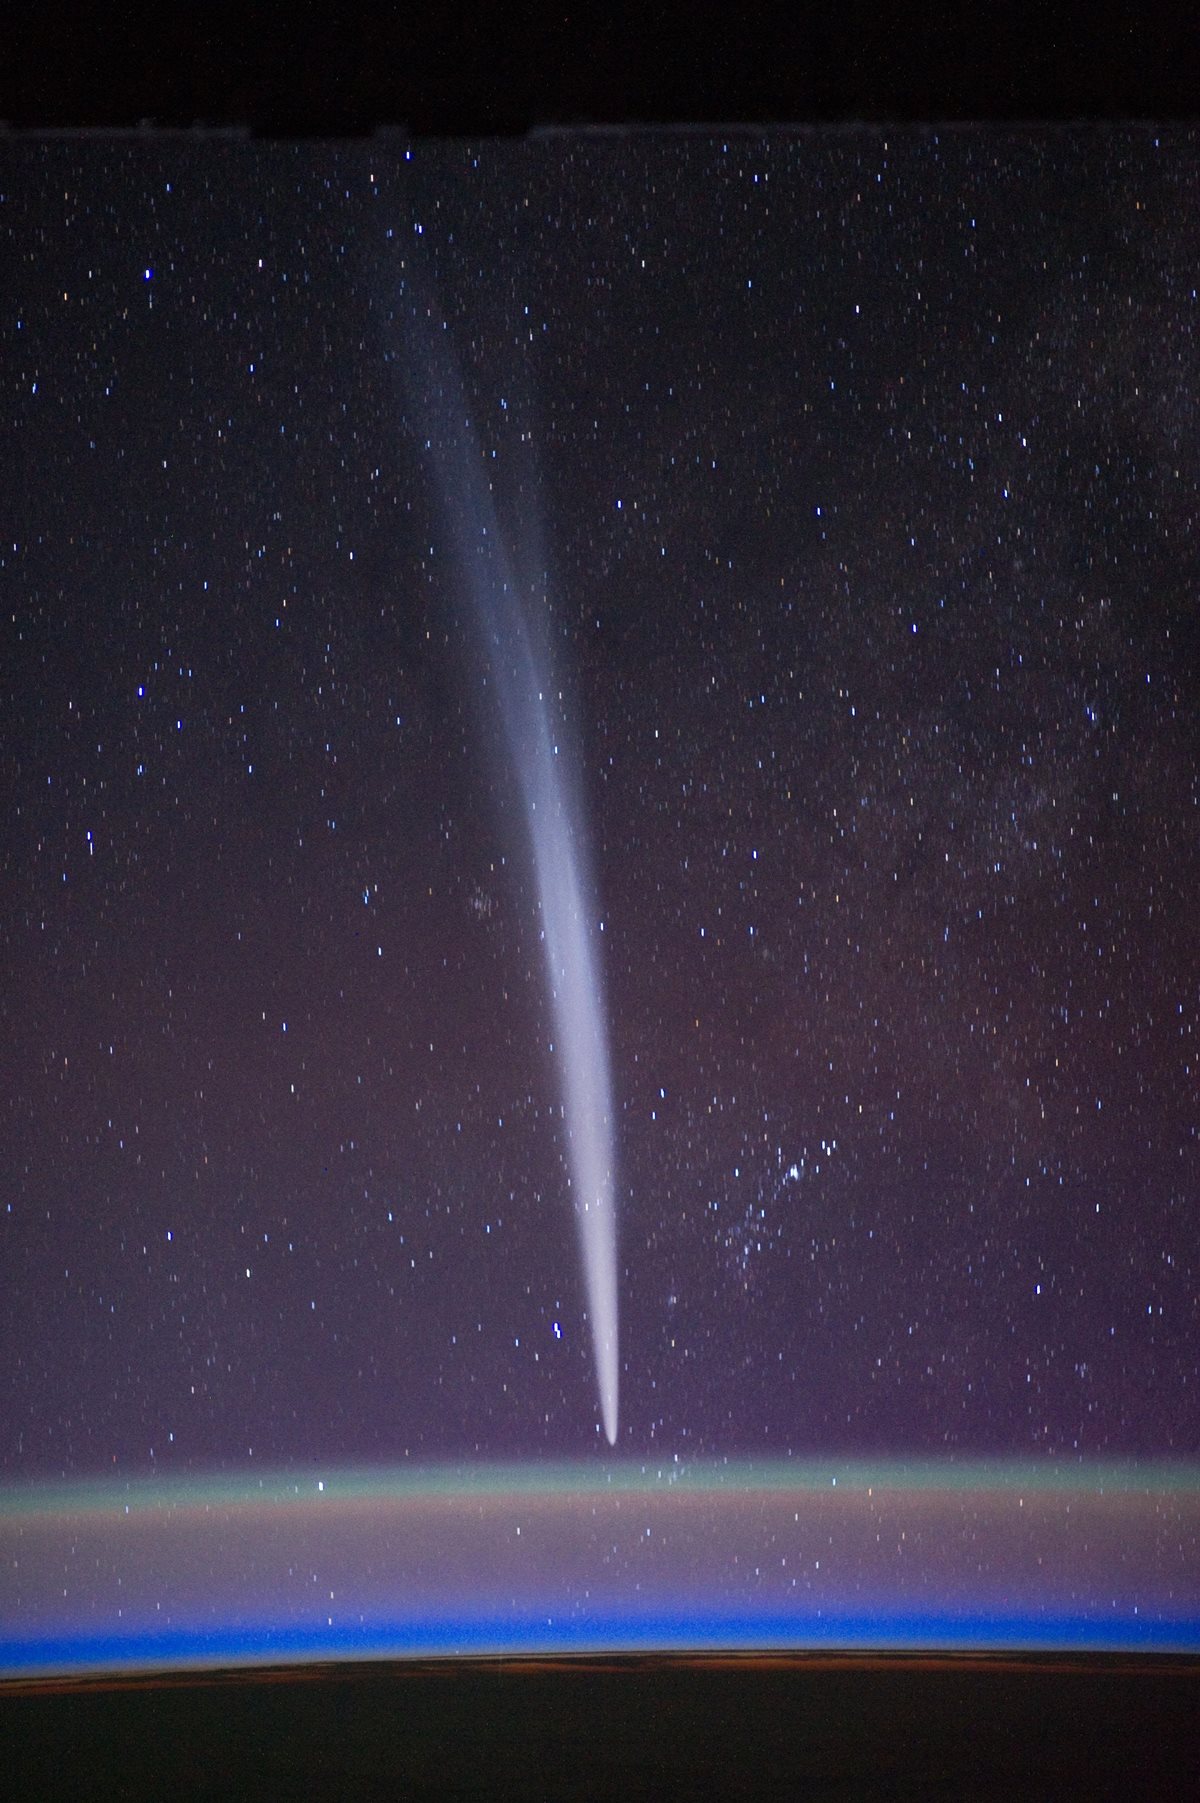 Where are comets found?